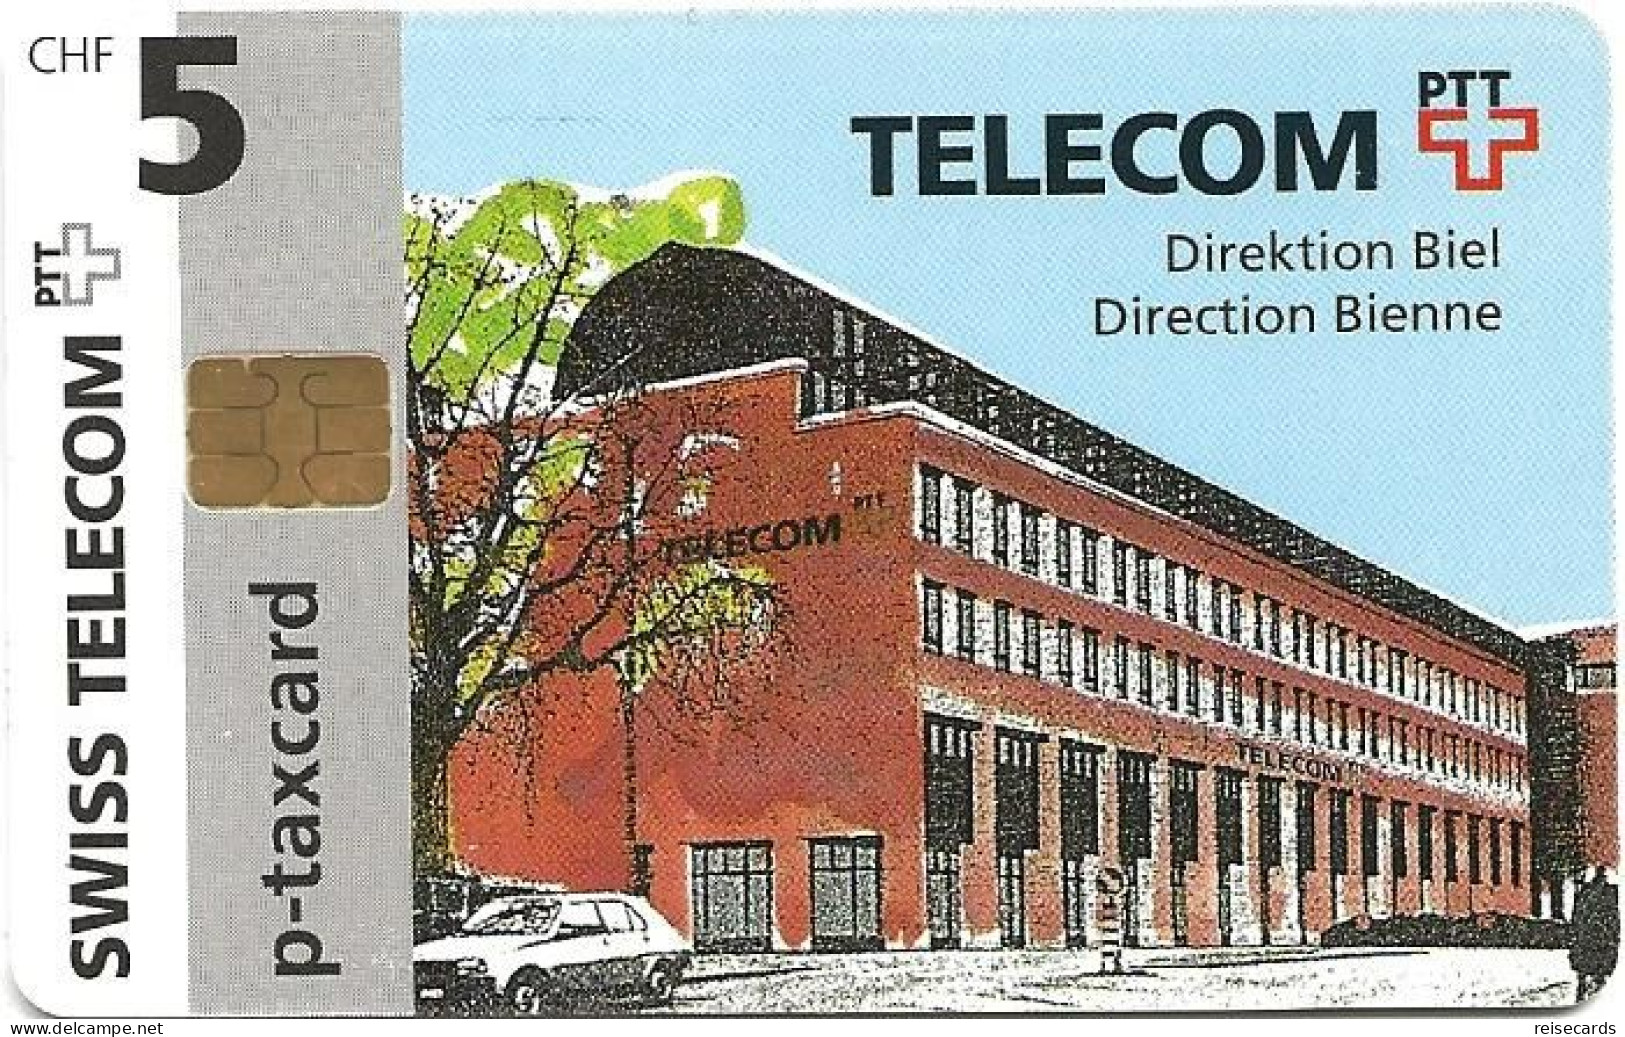 Switzerland: Swiss Telecom V 09/96 Telecom PTT, Direktion Biel - Svizzera